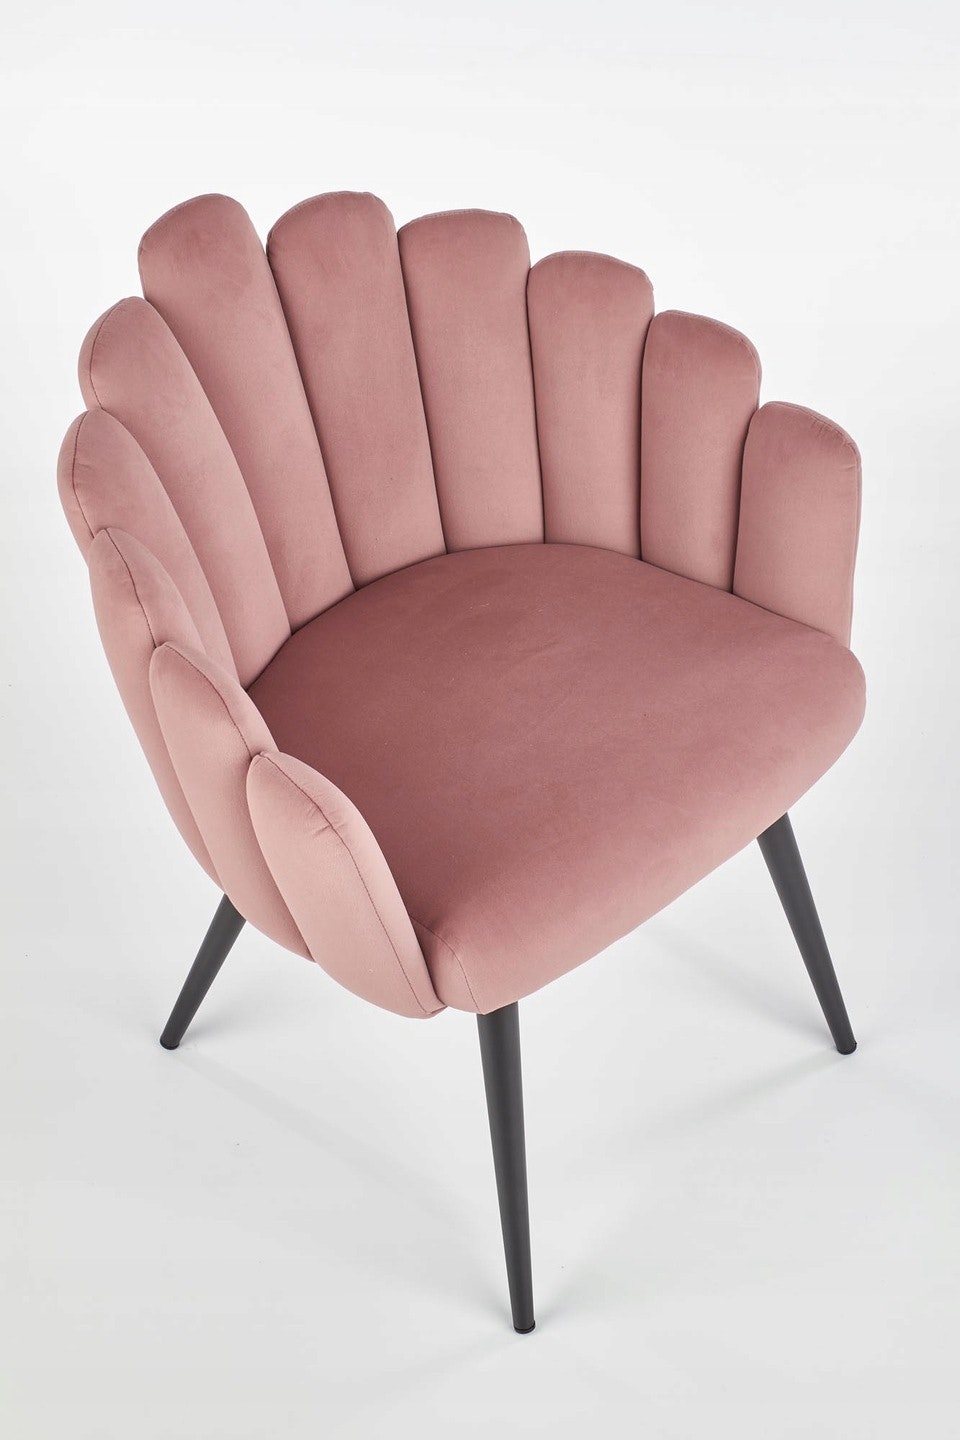 MODERN MATSTOL ROSA STOL - Mina Möbler - moderna och exklusiva möbler för  ditt hem.